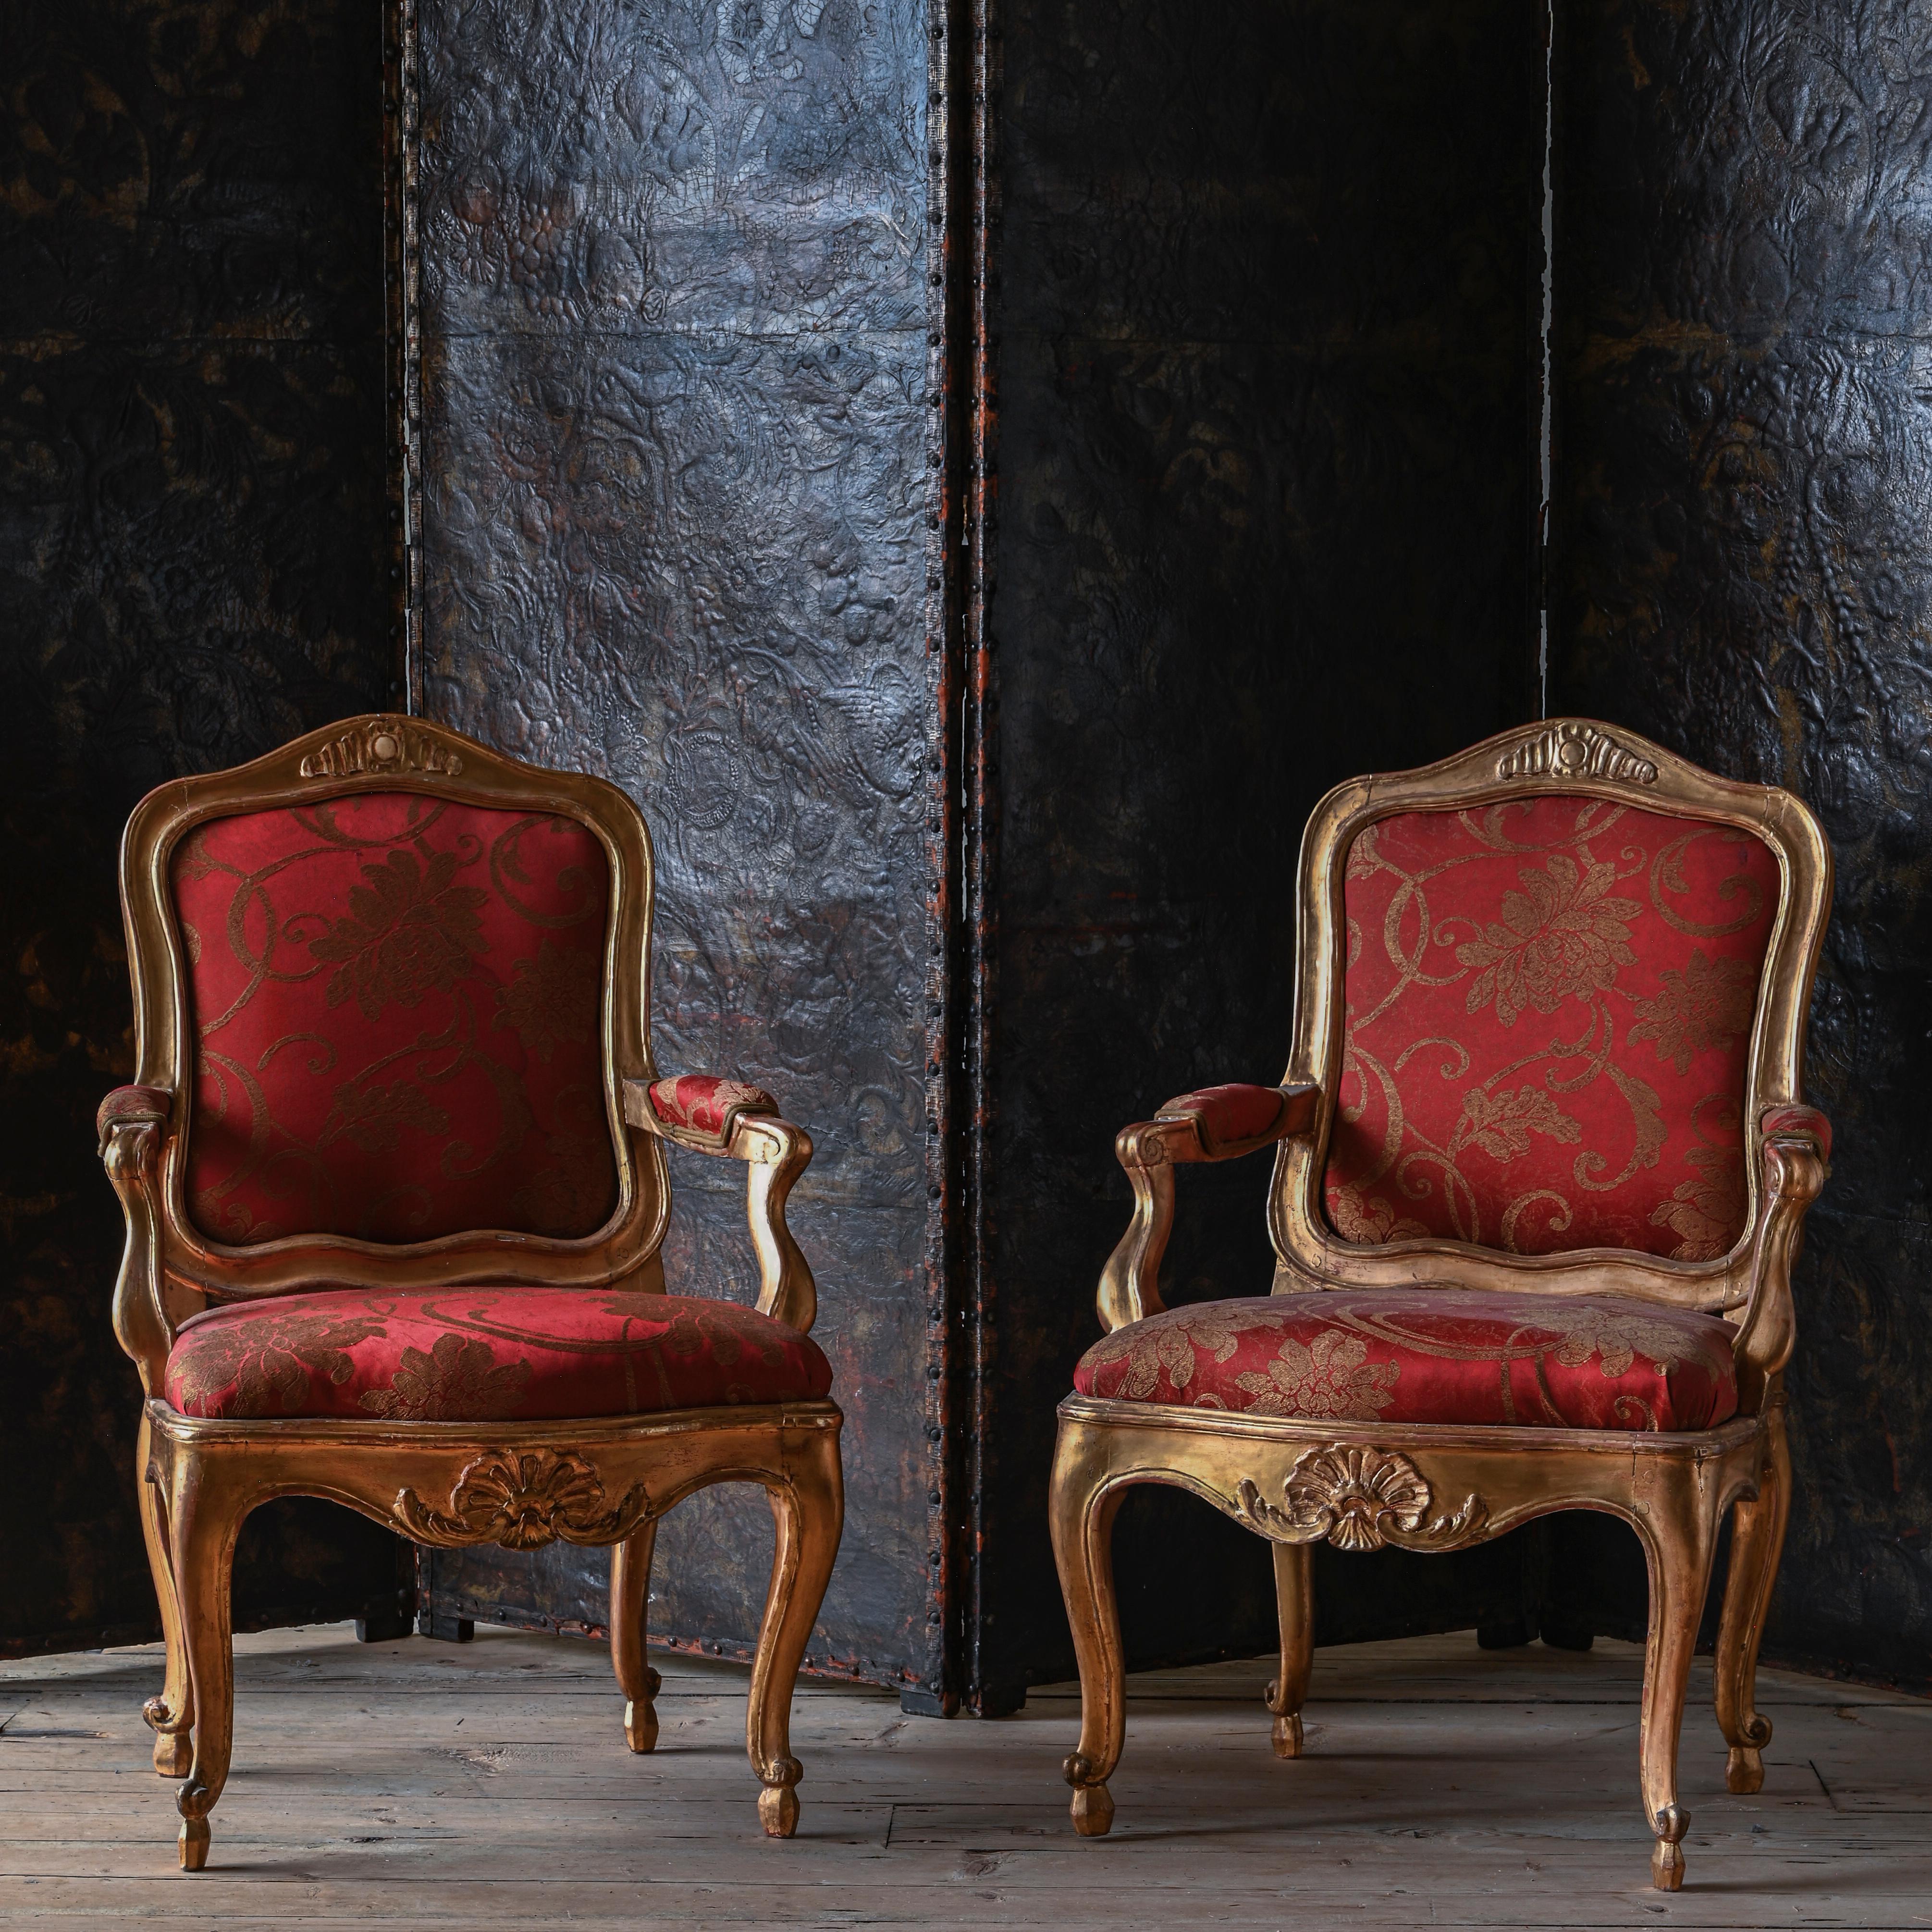 Belle paire de fauteuils Rococo en bois doré du 18e siècle. Stockholm, Suède, vers 1770. Des chaises exceptionnelles similaires se trouvent au palais royal de Stockholm.